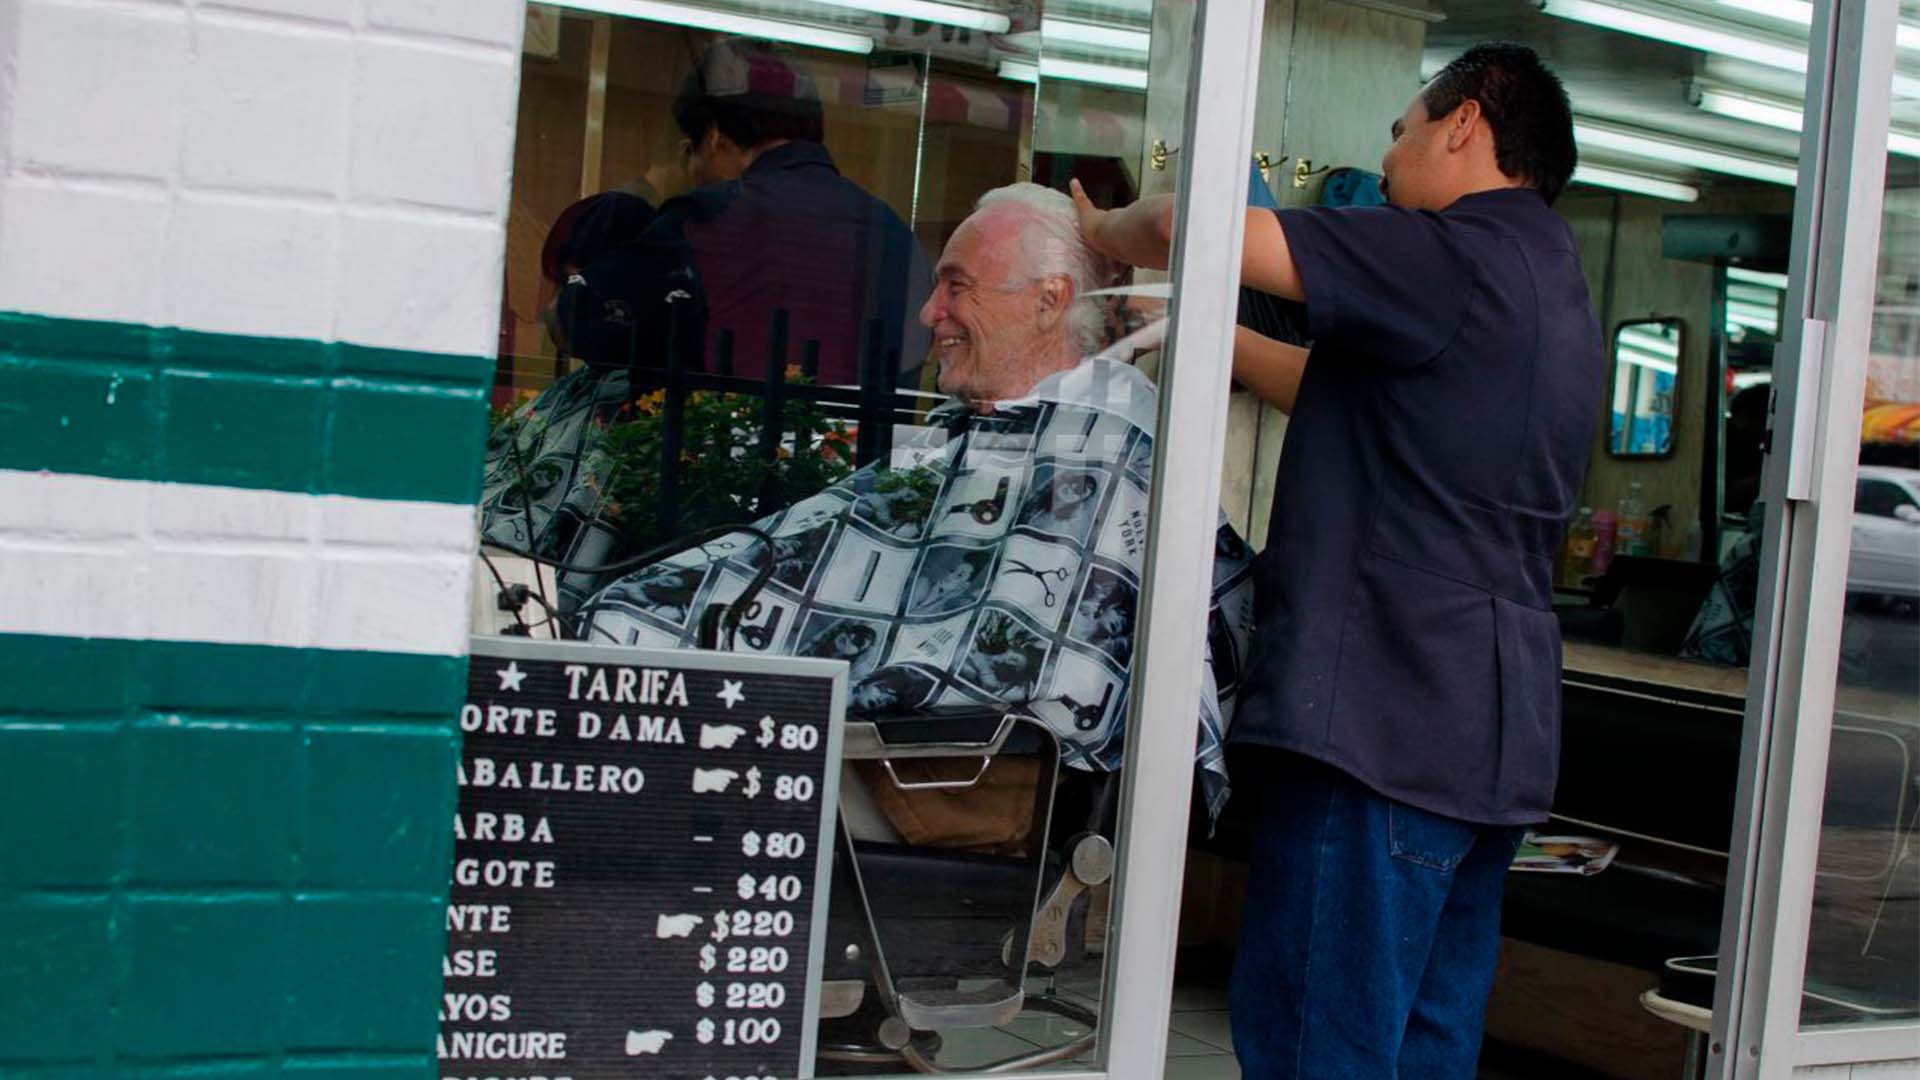 Hoy en día los hombres suelen visitar las barberías para cuidar del cabello o de la barba. FOTO: MARÍA JOSÉ MARTÍNEZ /CUARTOSCURO.COM